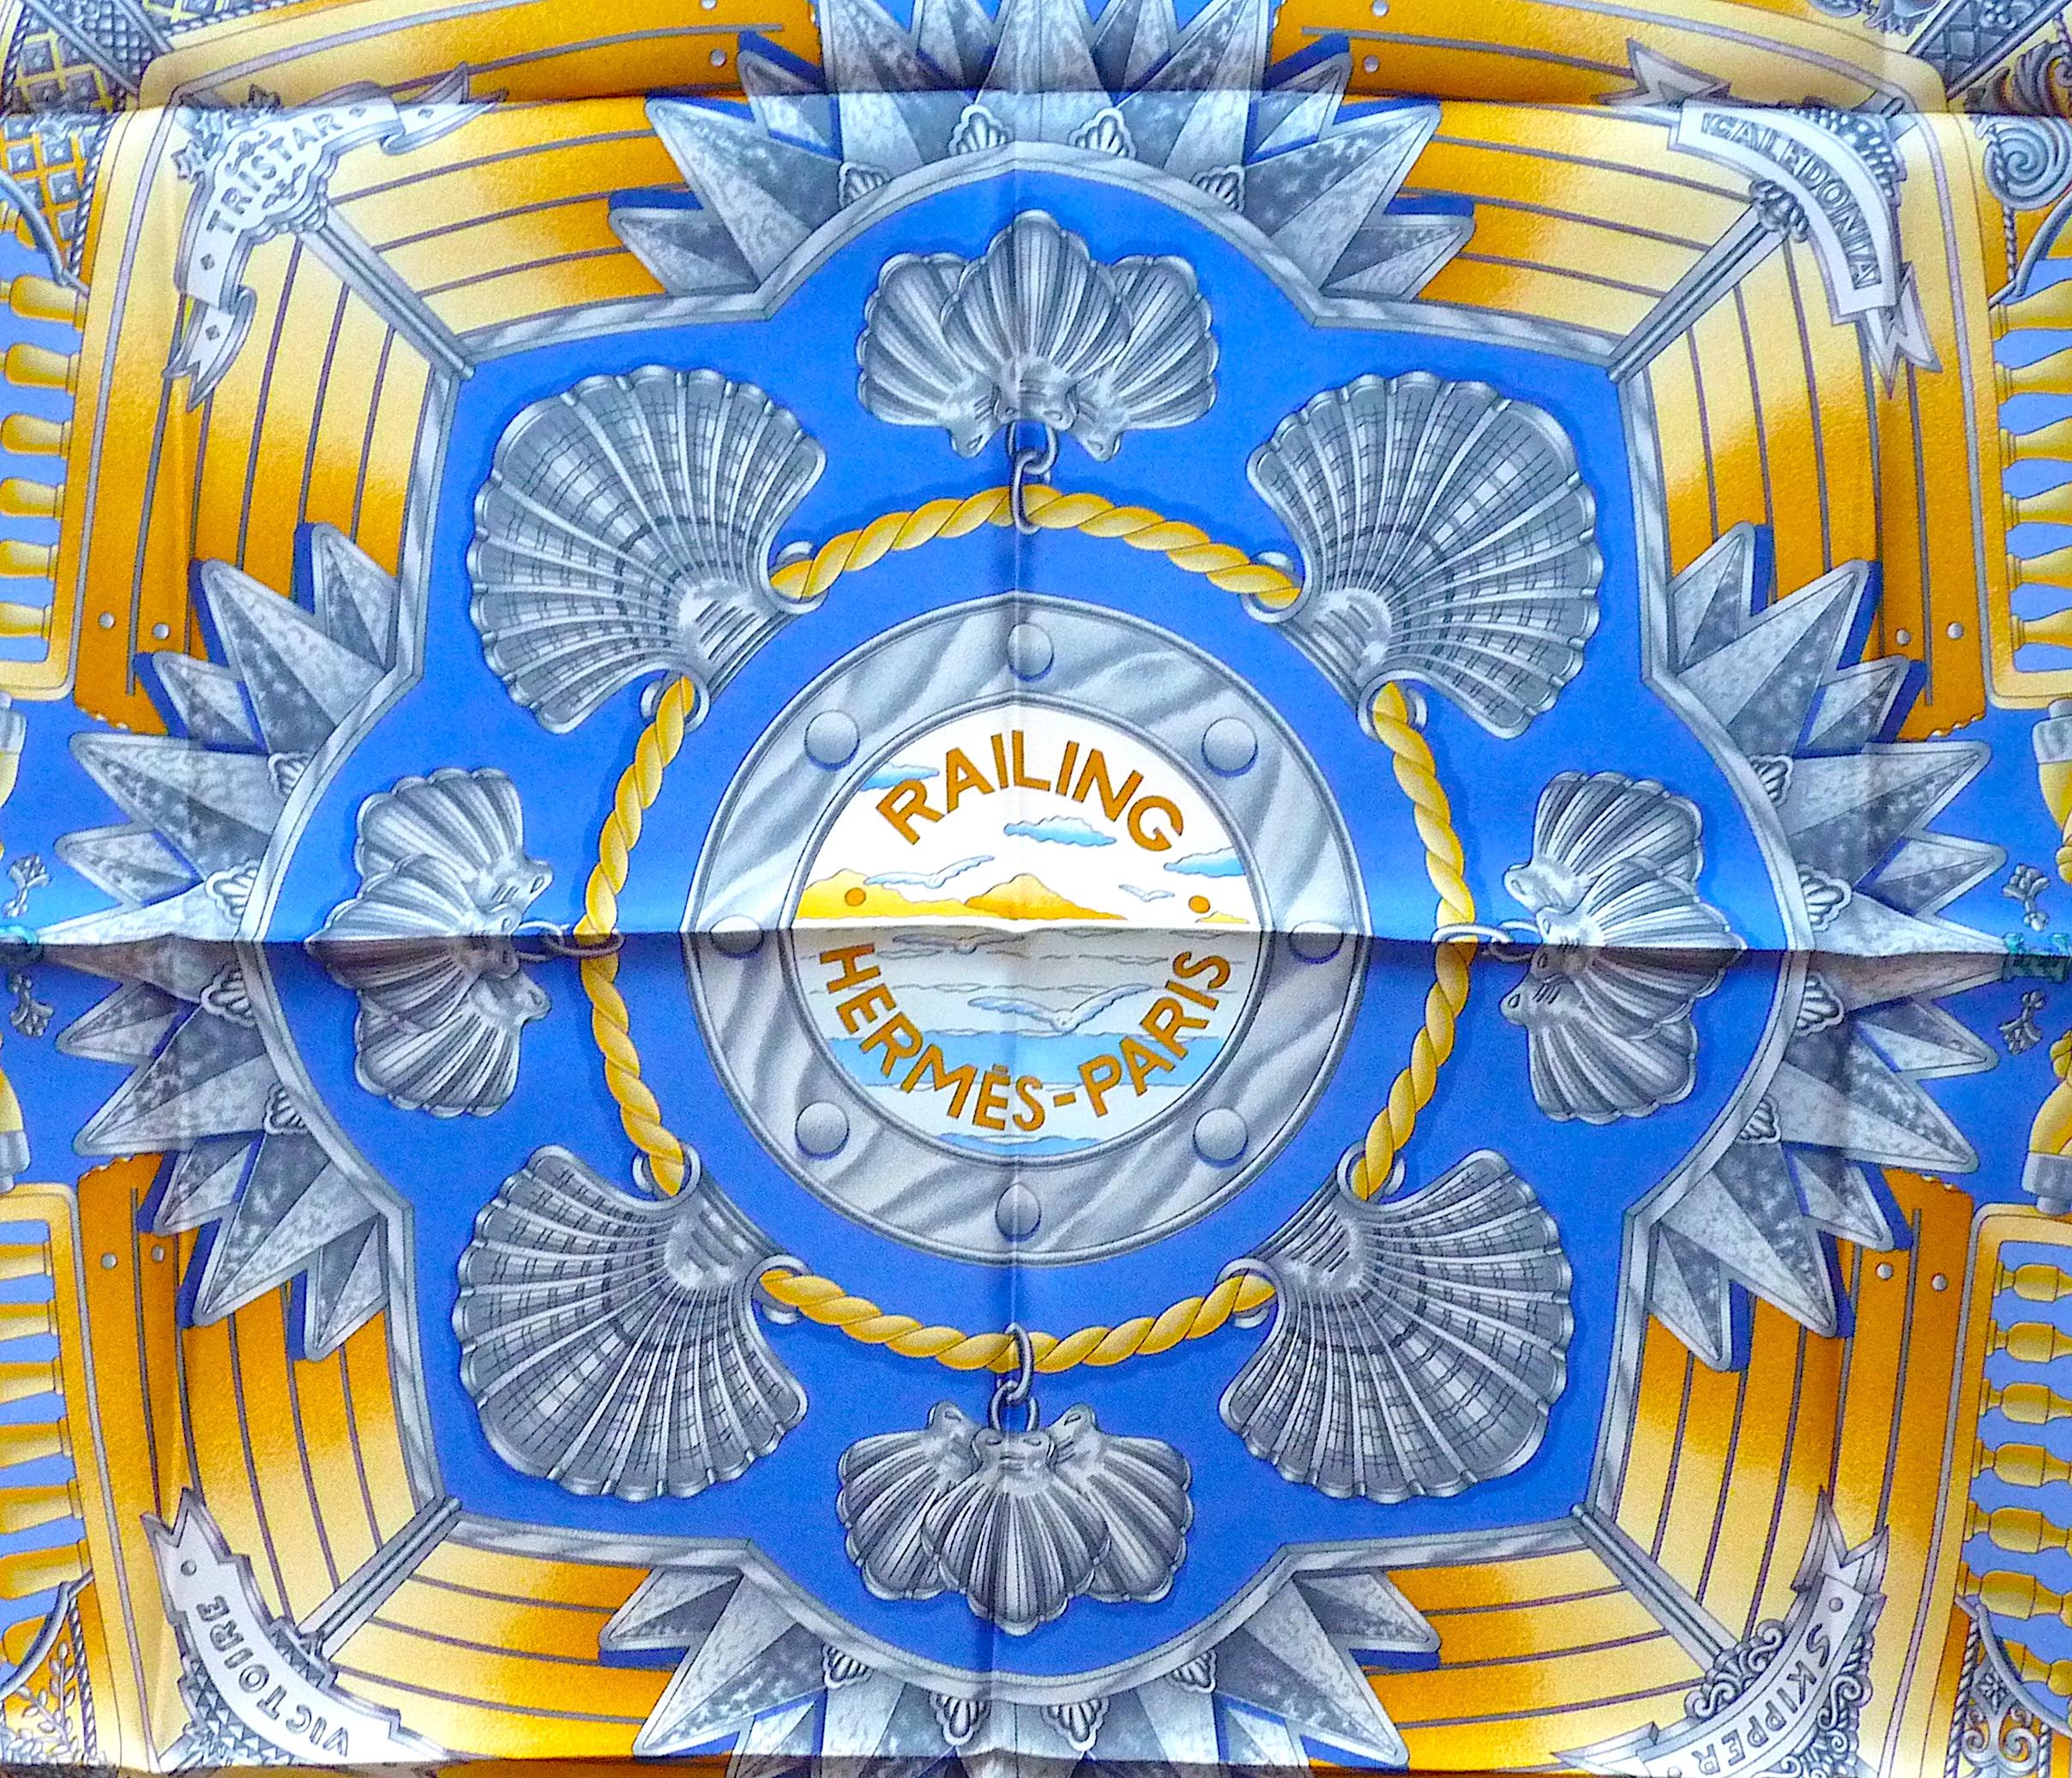 Wunderschönes HERMES Seidentuch, 90 cm x 90 cm , mit dem Titel Railing, entworfen von Joachim Metz im Jahr 1998, sehr gesucht ! Absolut authentisch und ungetragen!

Care Tag angebracht, keine Box

Farben: Tiefblau, Himmelblau, Gold